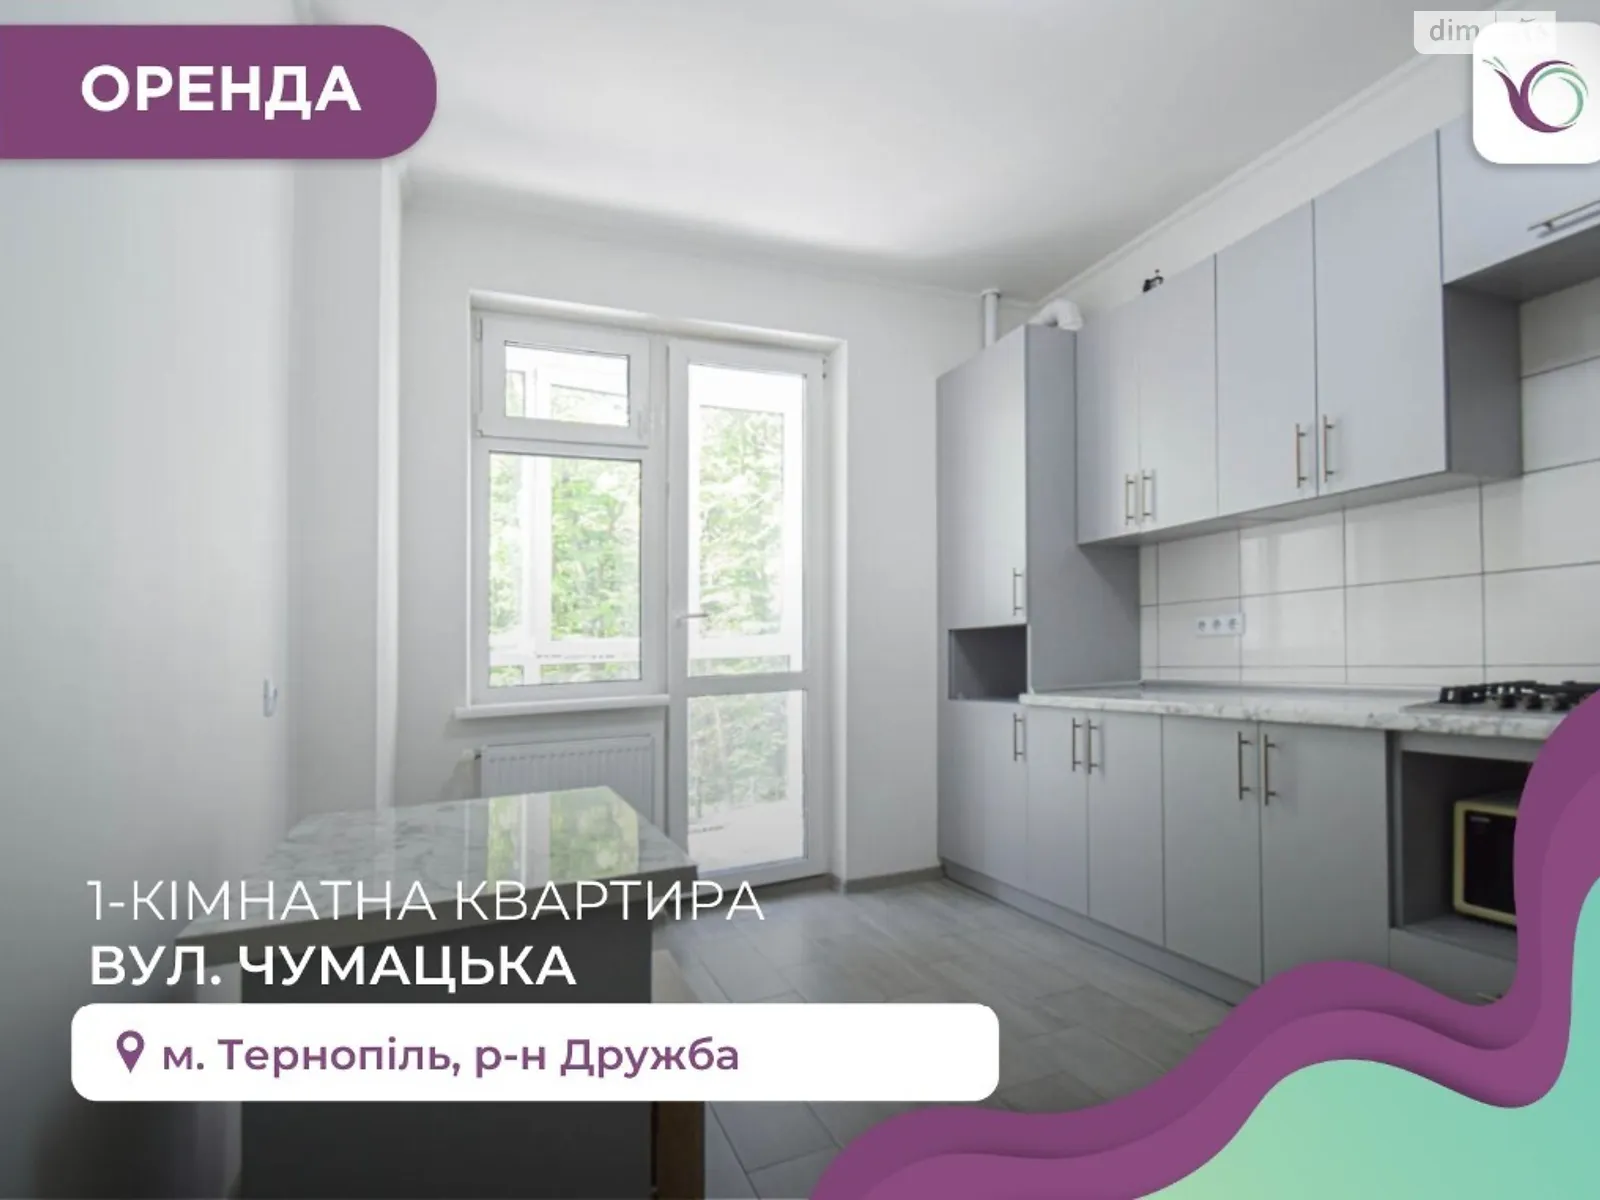 1-кімнатна квартира 46.1 кв. м у Тернополі, цена: 250 €